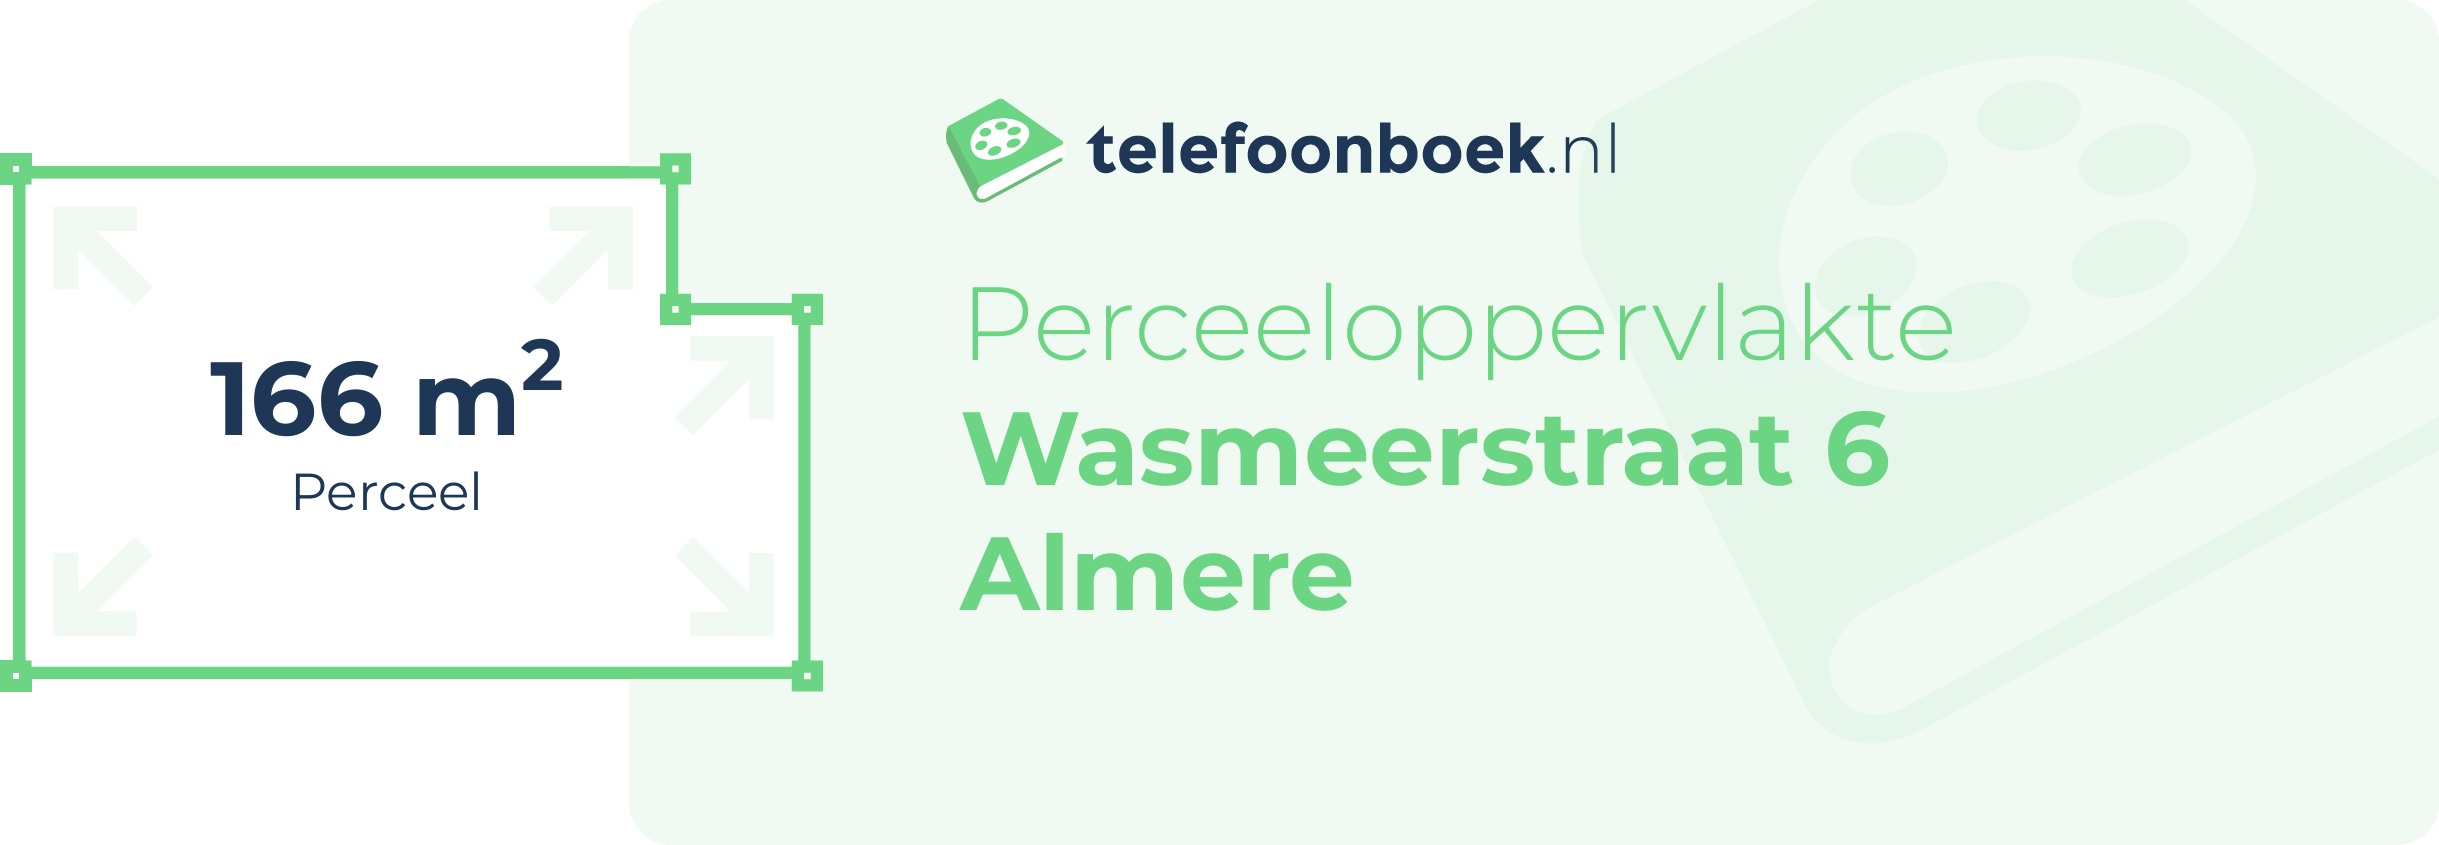 Perceeloppervlakte Wasmeerstraat 6 Almere